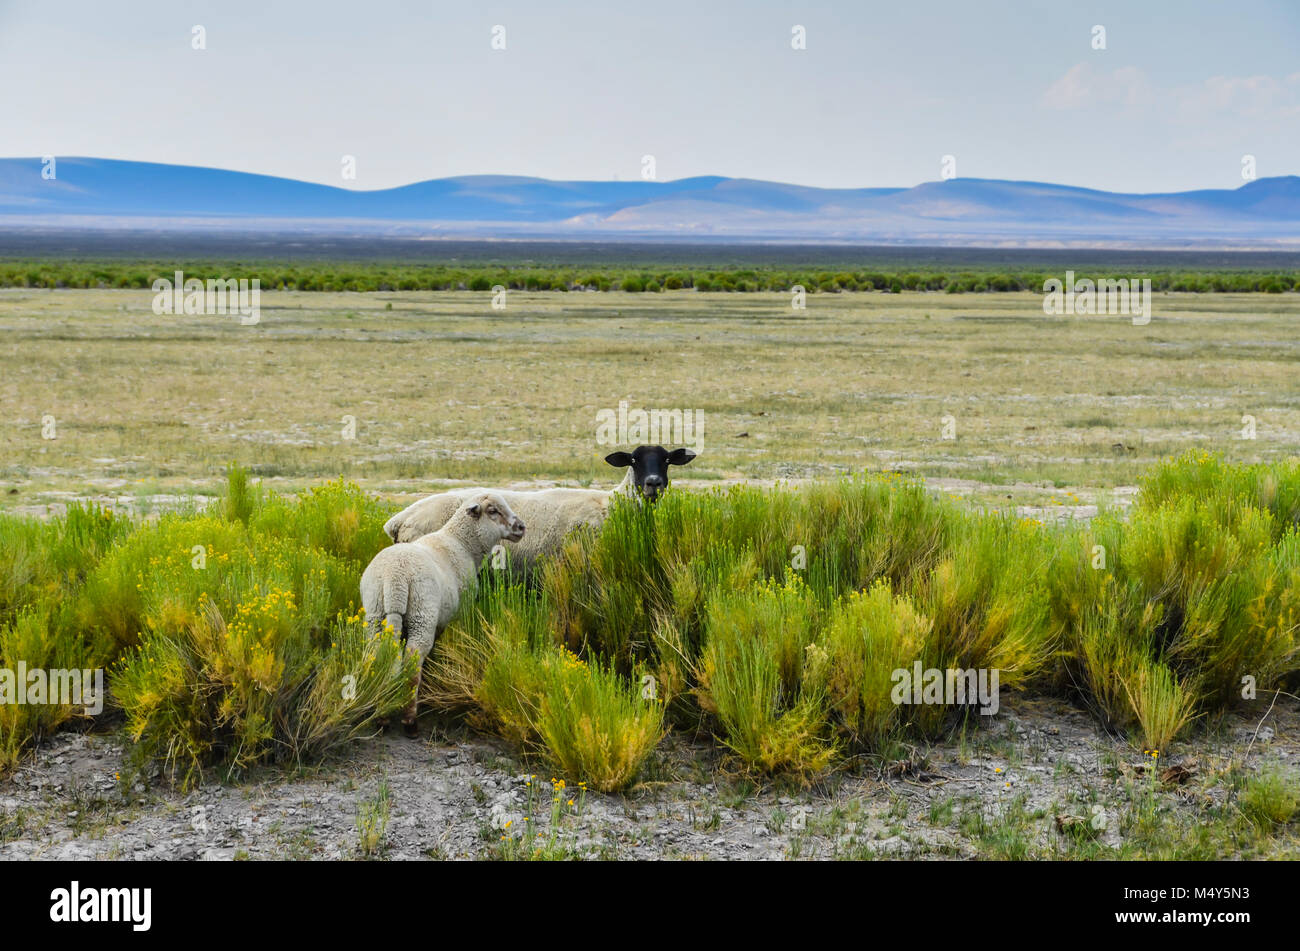 Ein schwarzes Schaf konfrontiert und ein weißes Schaf Peer auf den Betrachter aus einer offenen Bereich auf einer Salbei gepunktete Feld, mit fernen Bergen im Hintergrund. Stockfoto